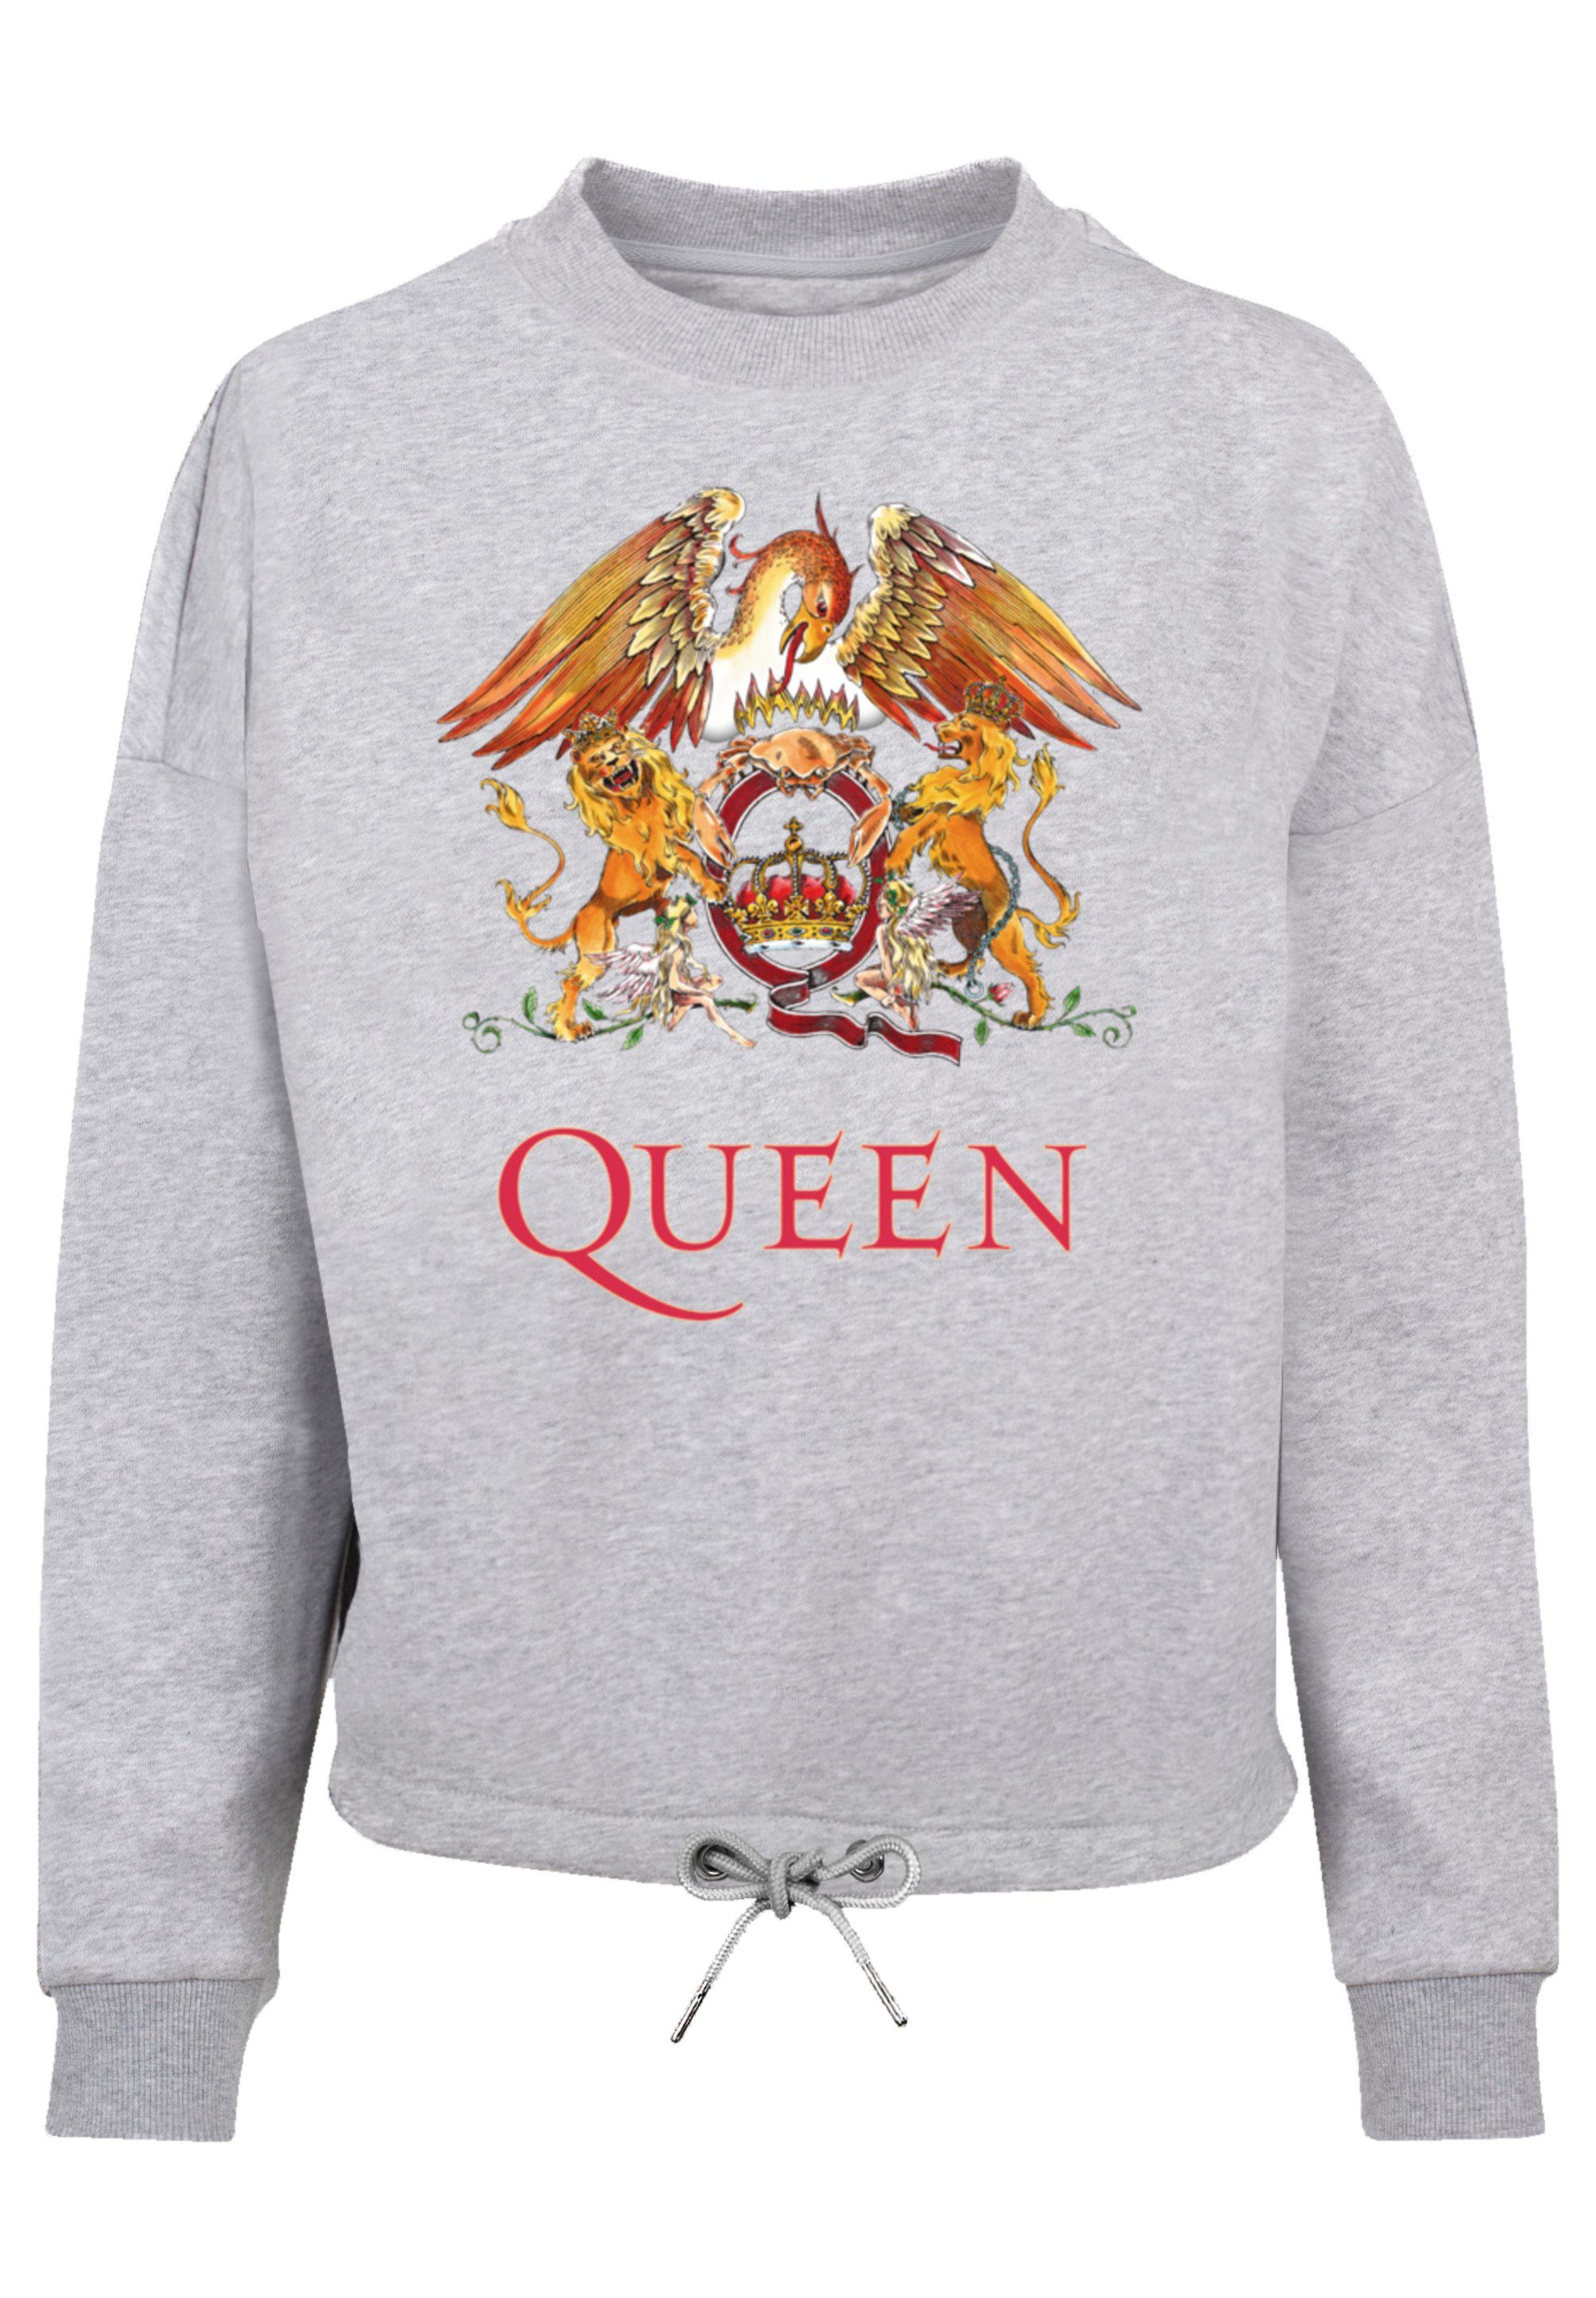 Sweatshirt am Weit Ärmel Bündchen geschnittenen F4NT4STIC Crest Queen Kordelzug Classic Print, und